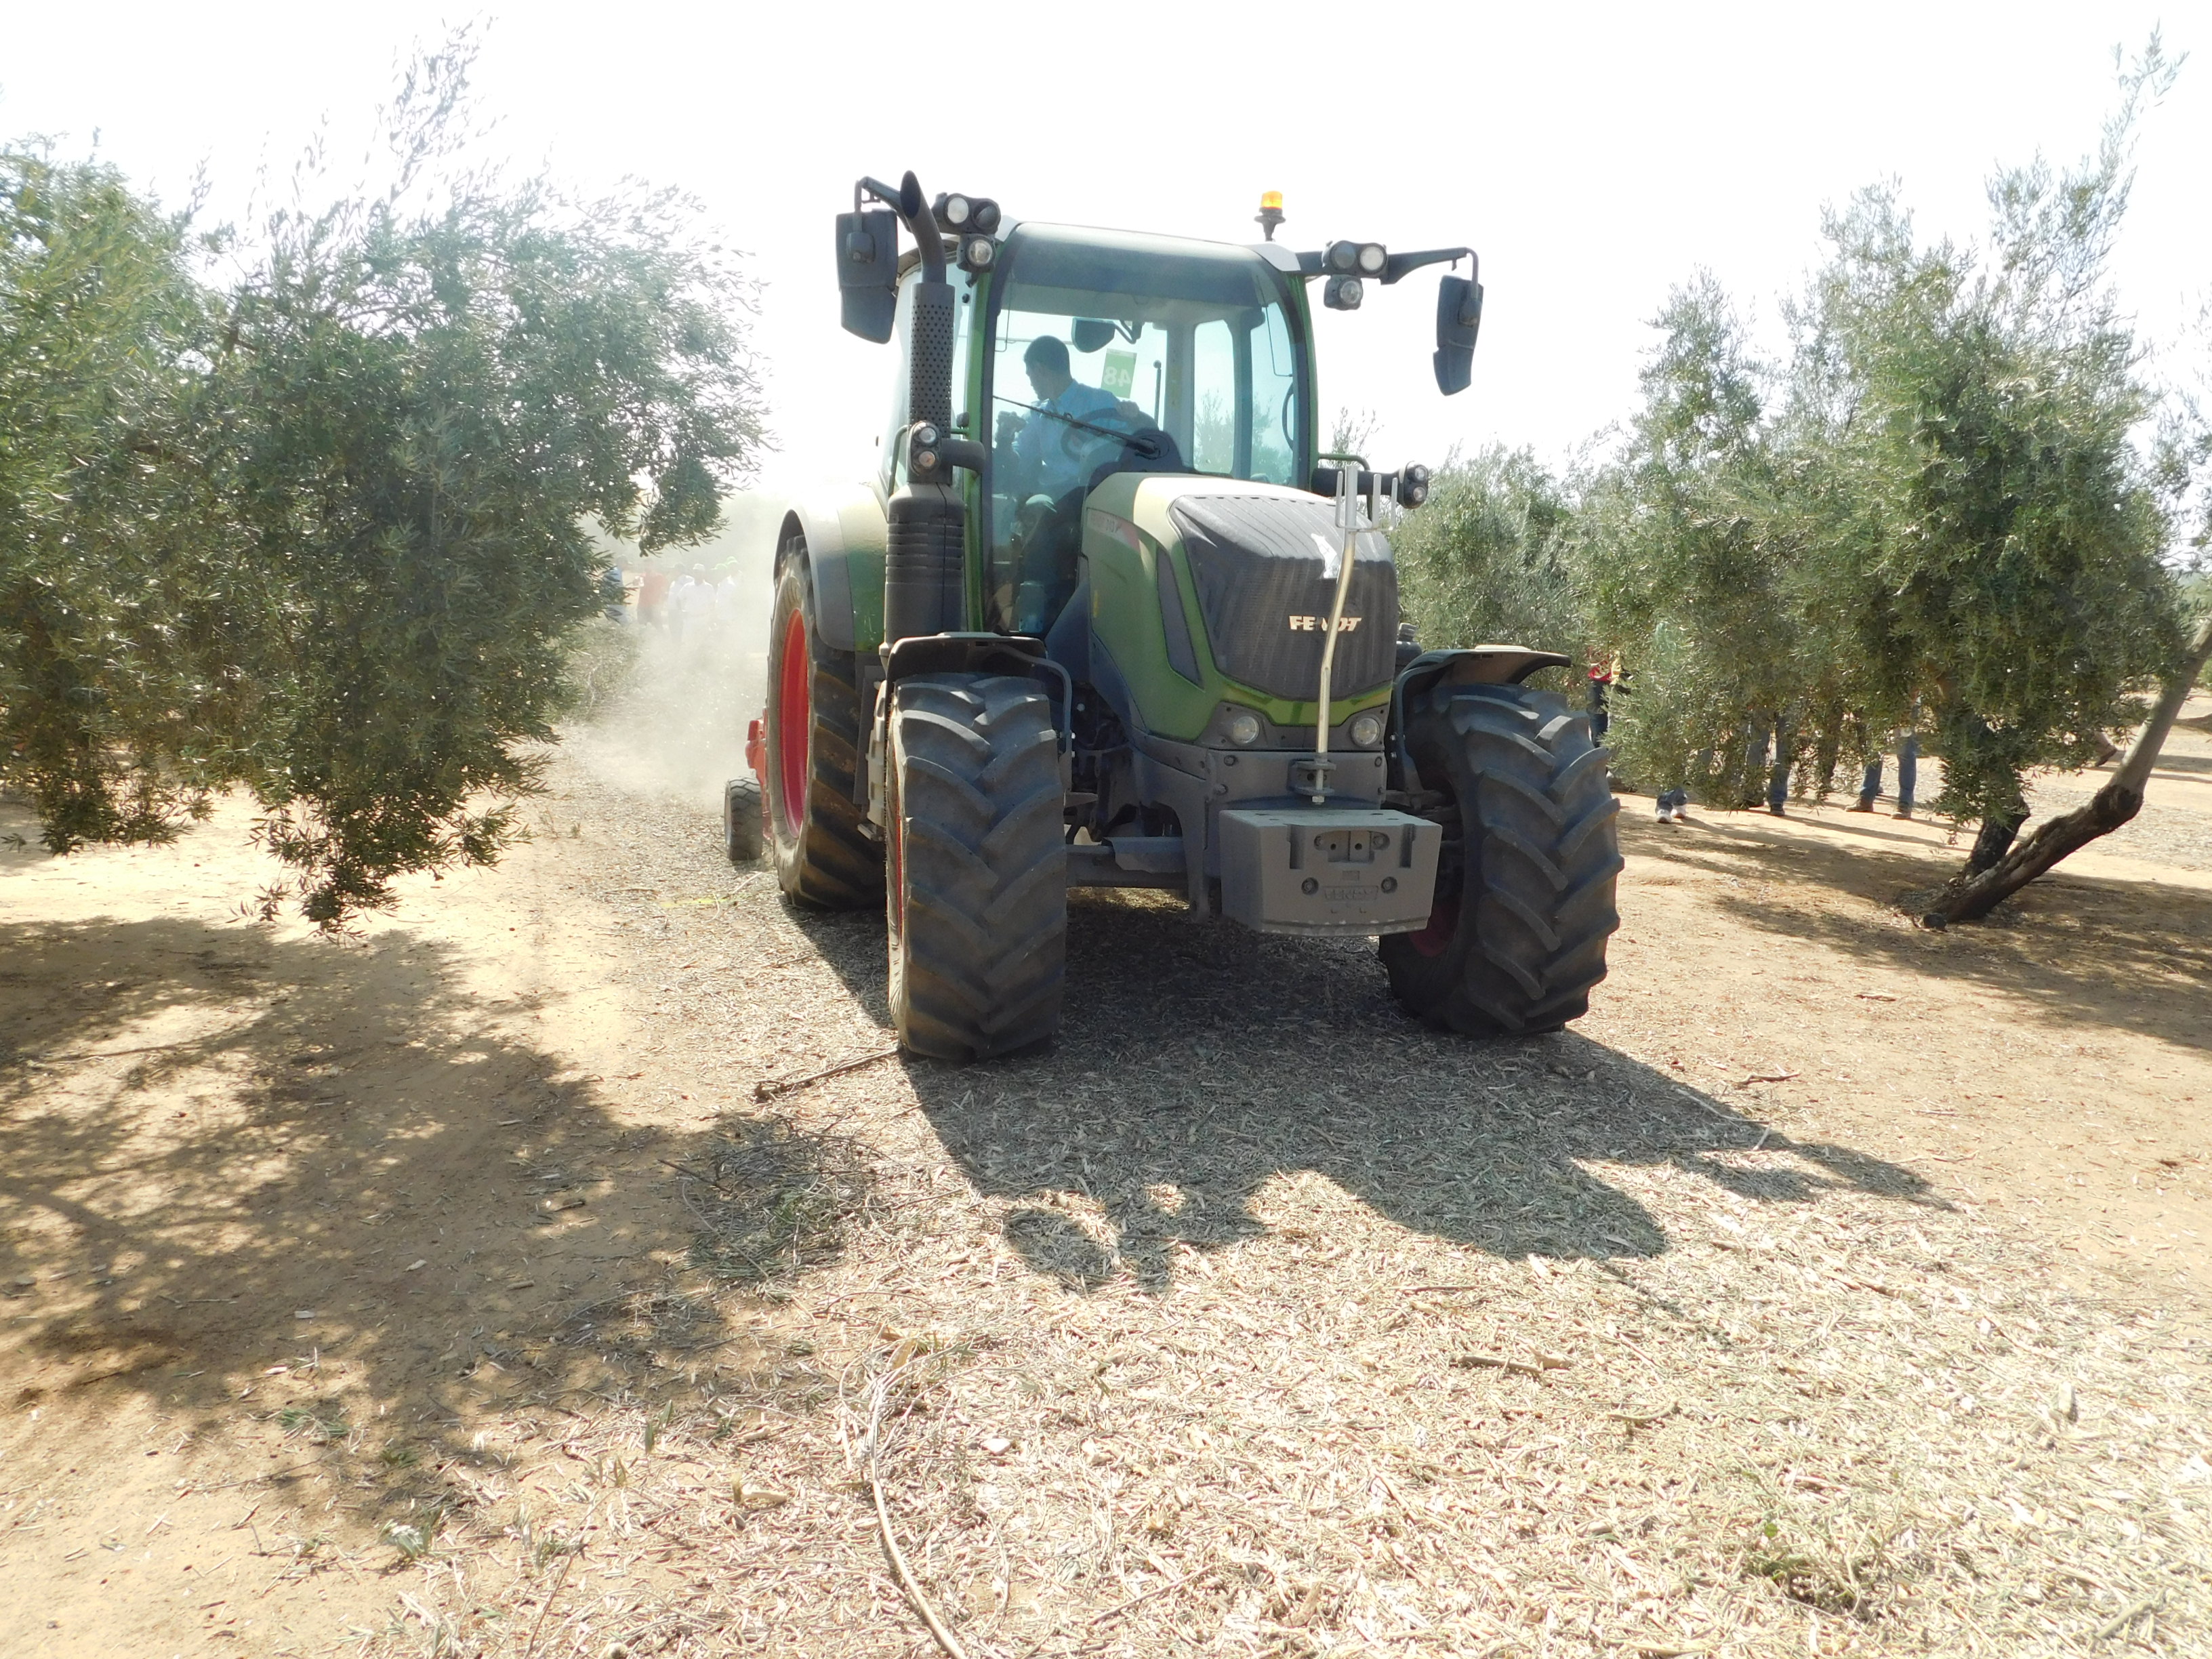 Demostracin del 313 Vario Profi en trabajos de triturado en olivar